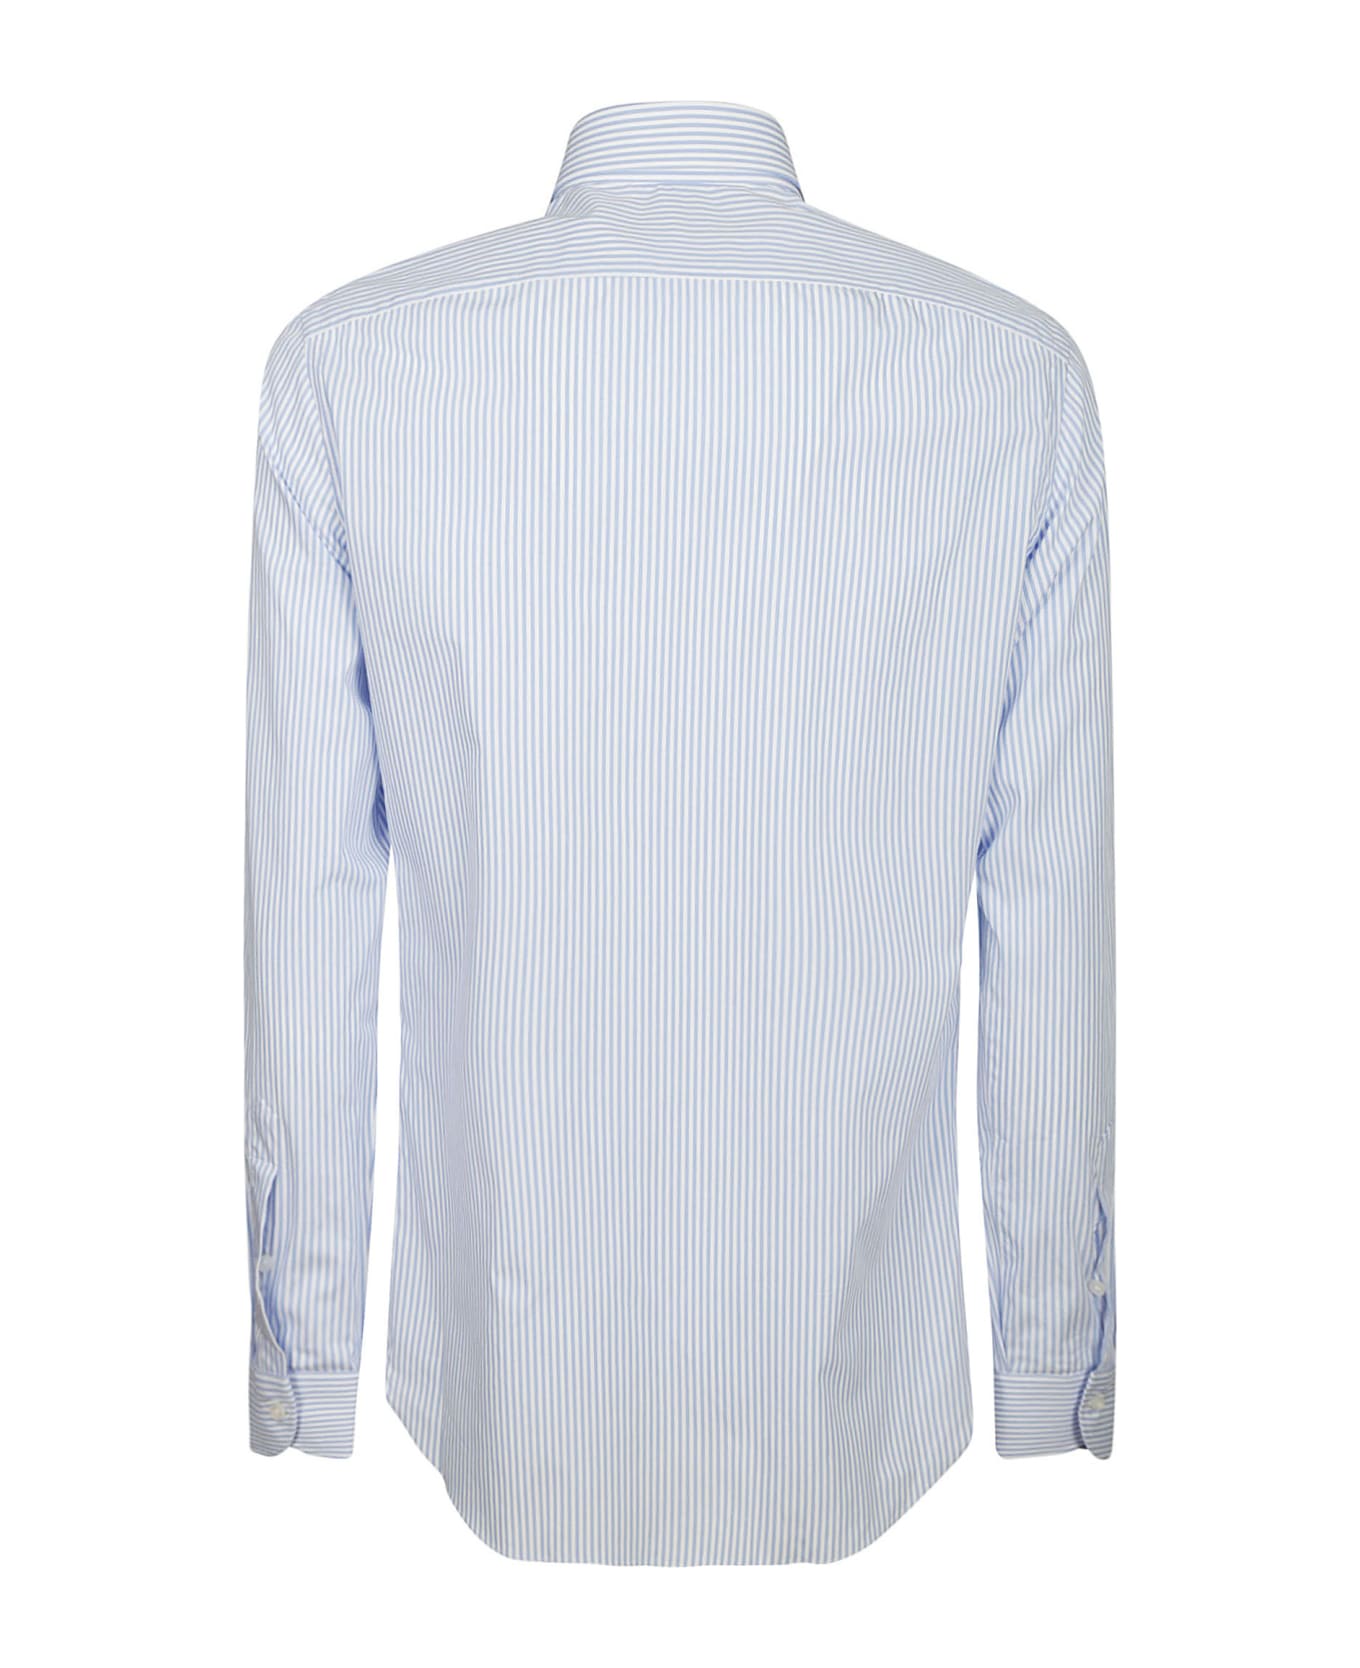 Borriello Napoli Shirt - Stripe Blue シャツ